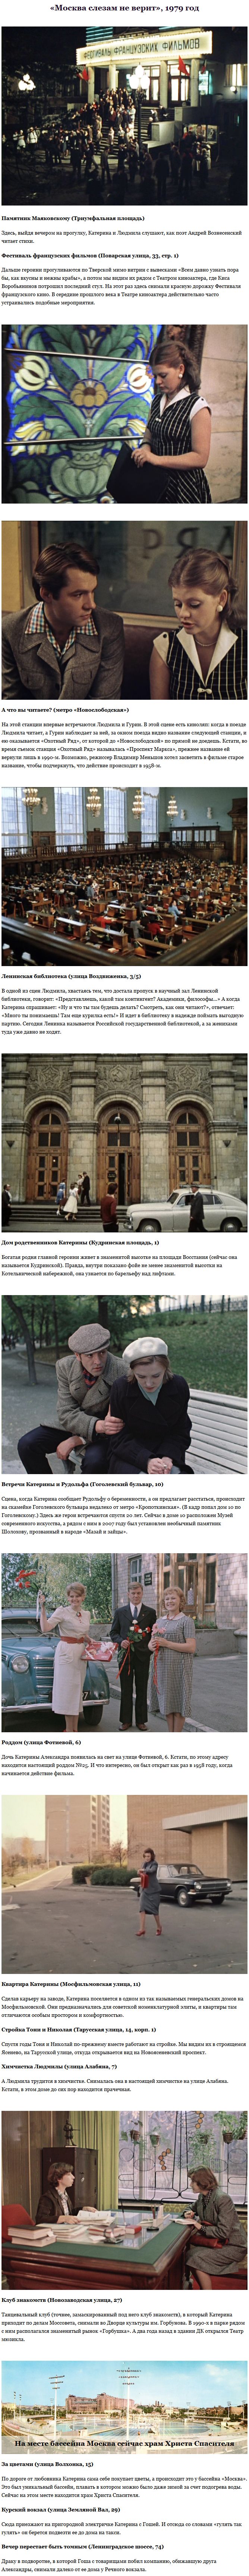 Места съемок культовых кинофильмов в Москве (17 фото)